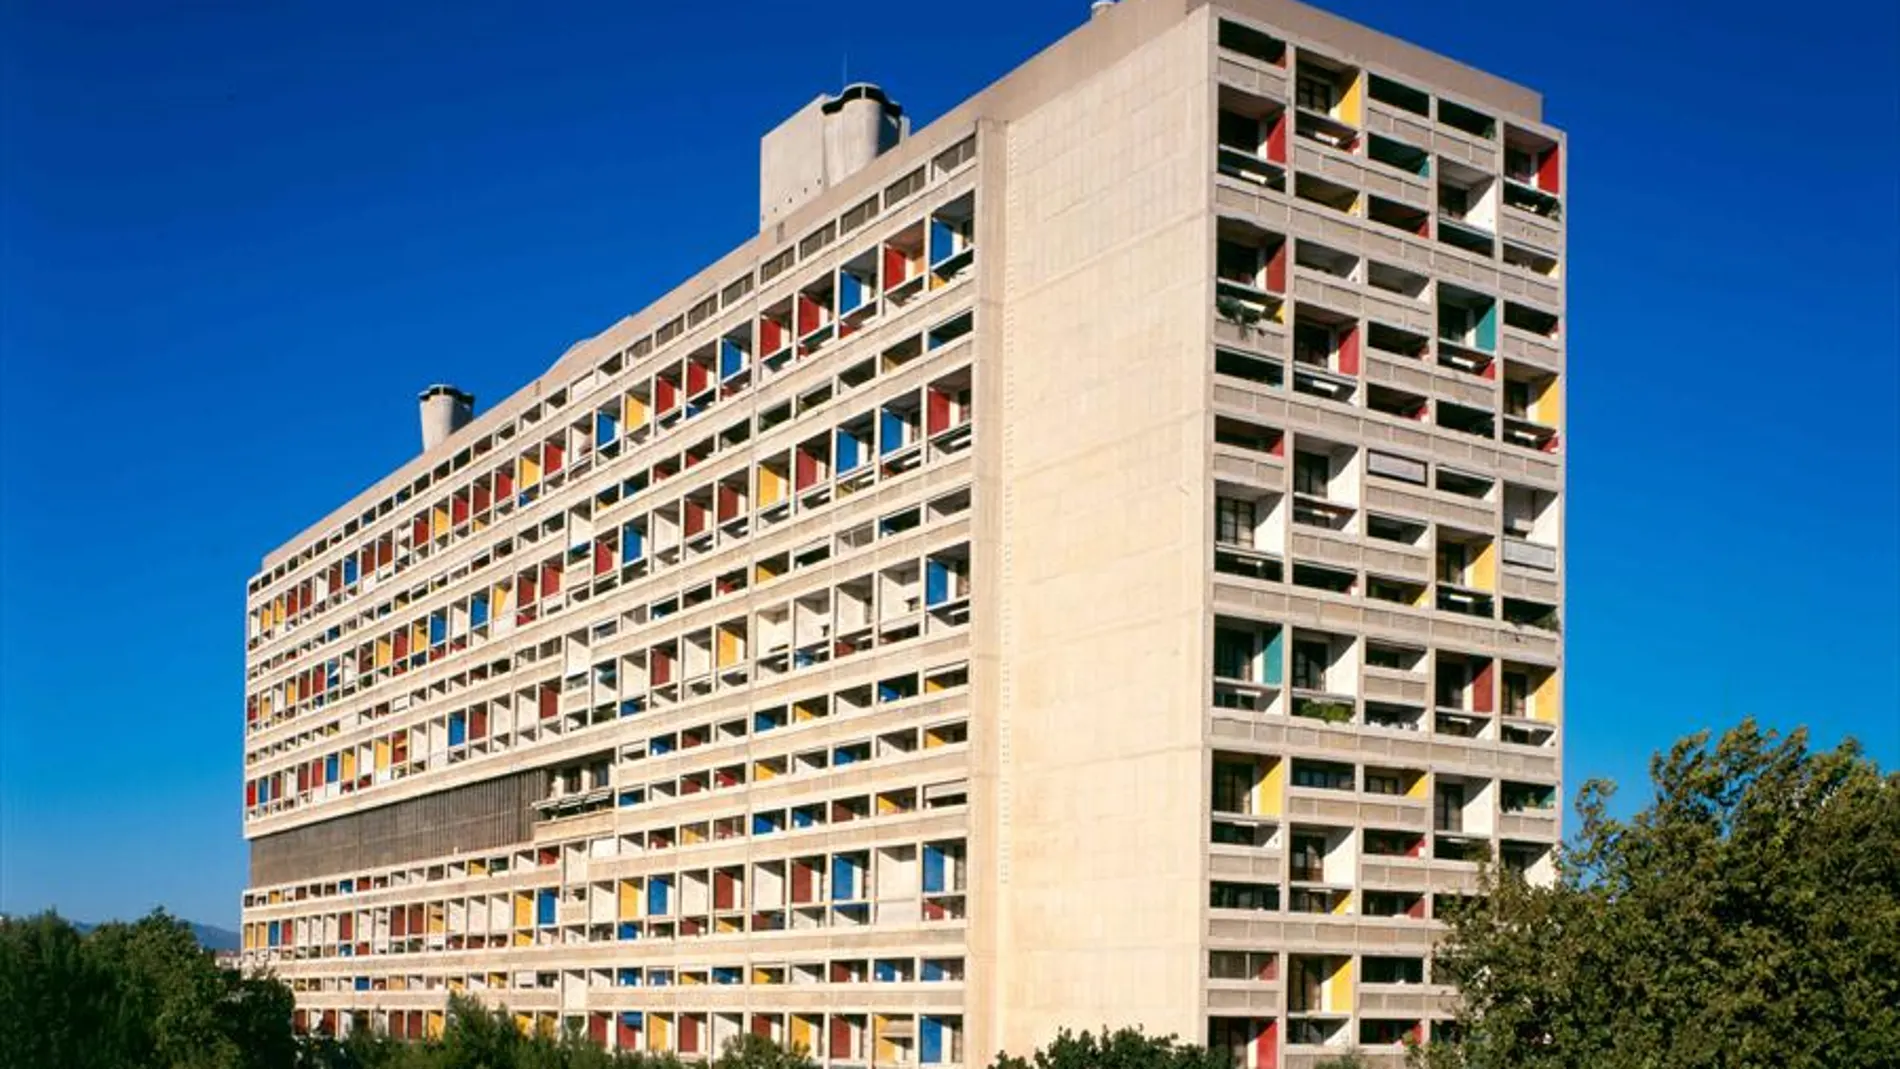 Unité d'habitation, en Marsella, uno de los edificios dentro de la lista Patrimonio de la Humanidad.